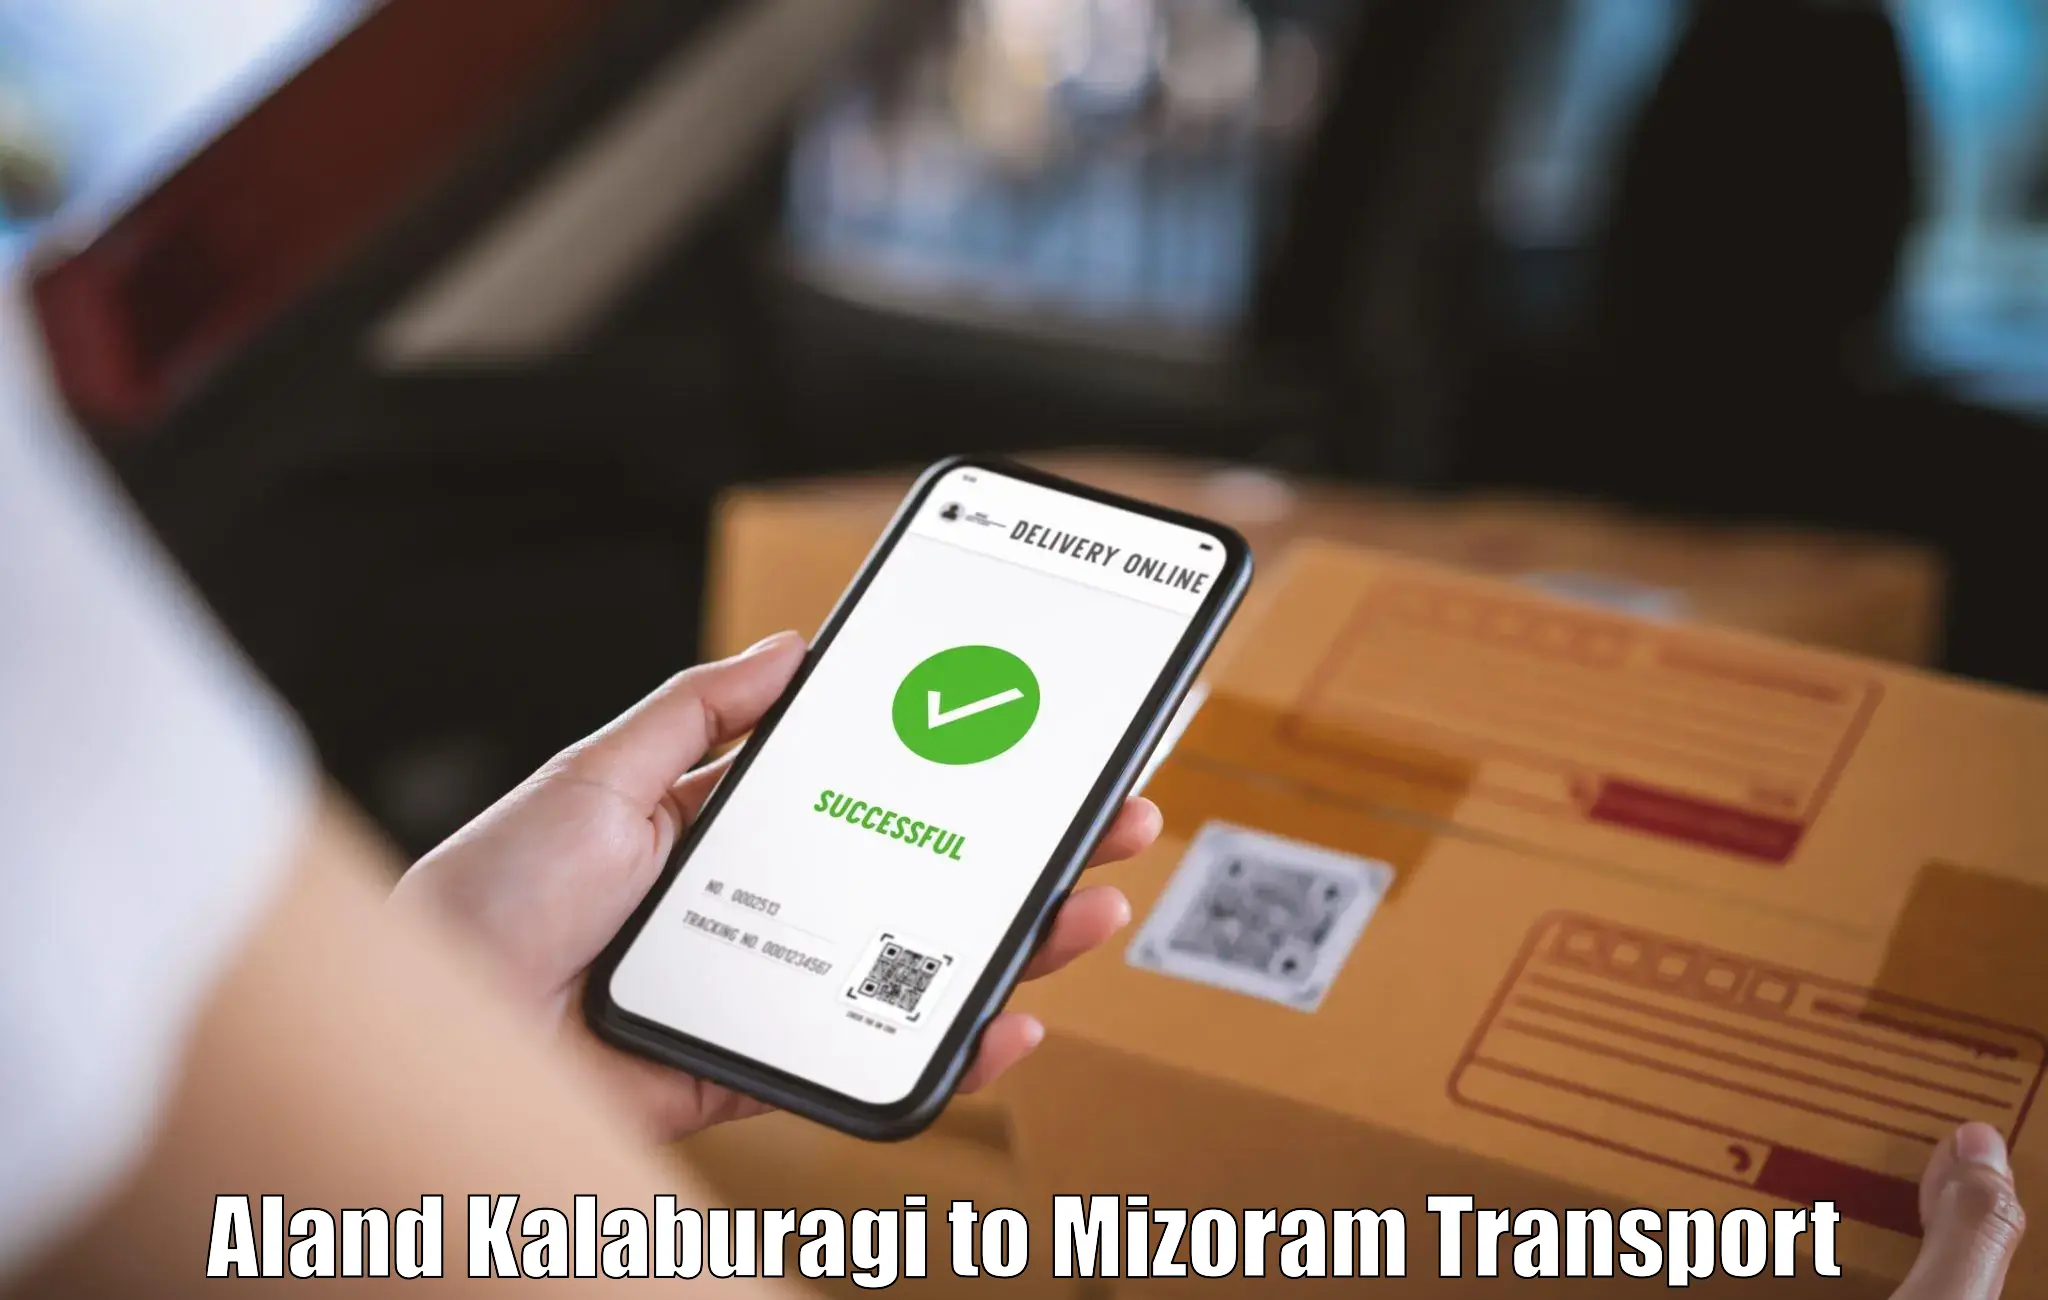 All India transport service Aland Kalaburagi to Mizoram